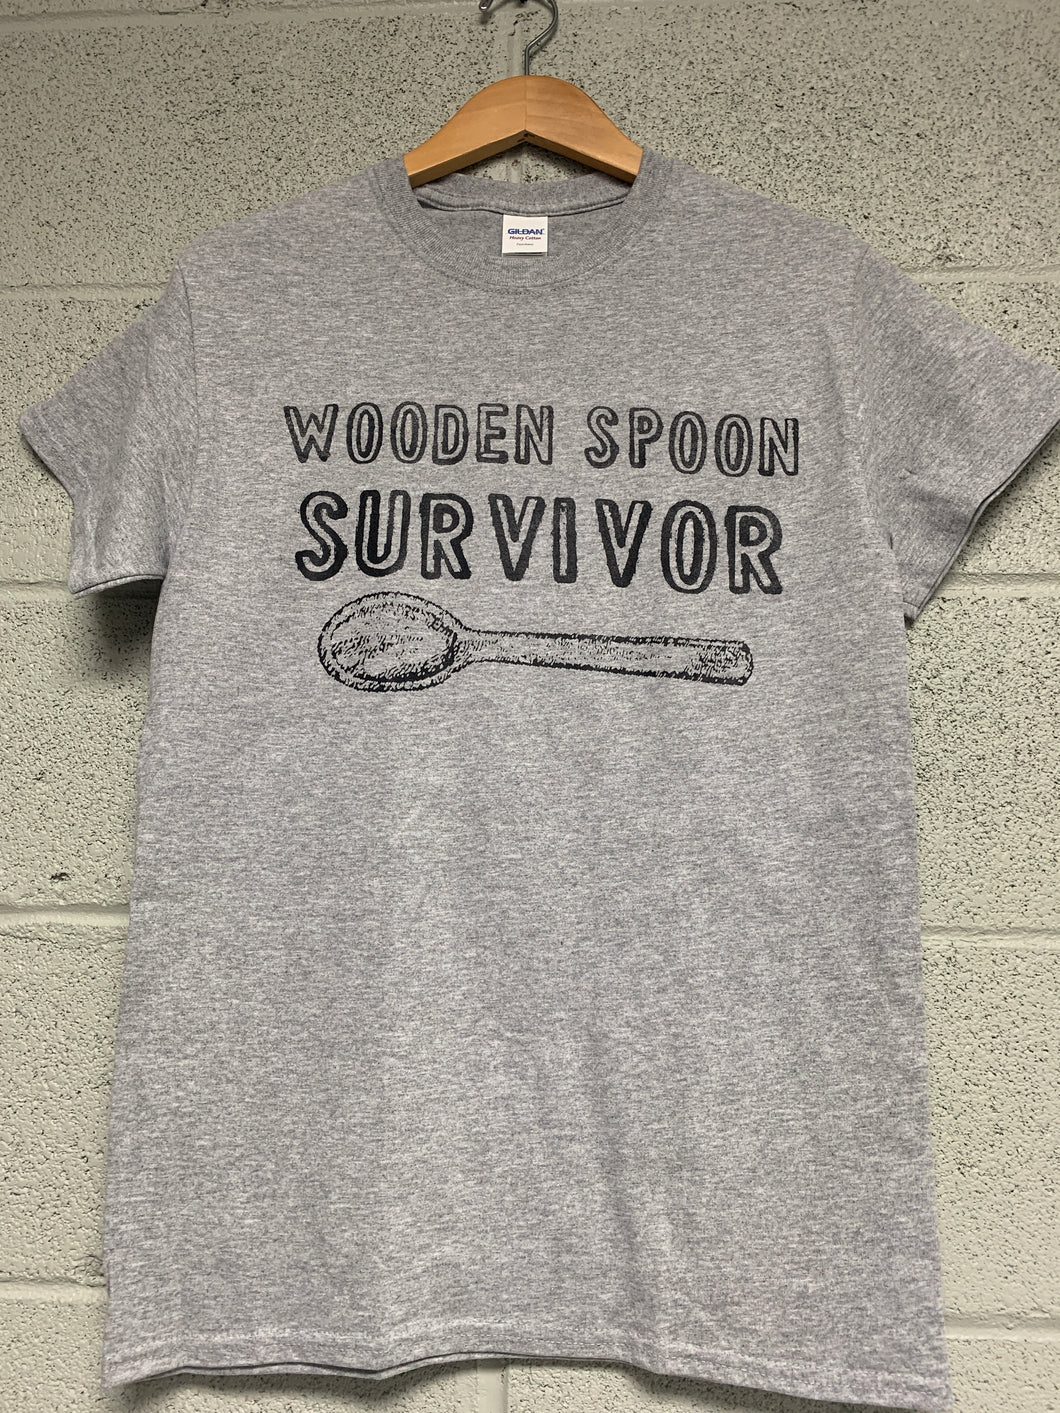 wooden spoon survivor shirt Heather Grey